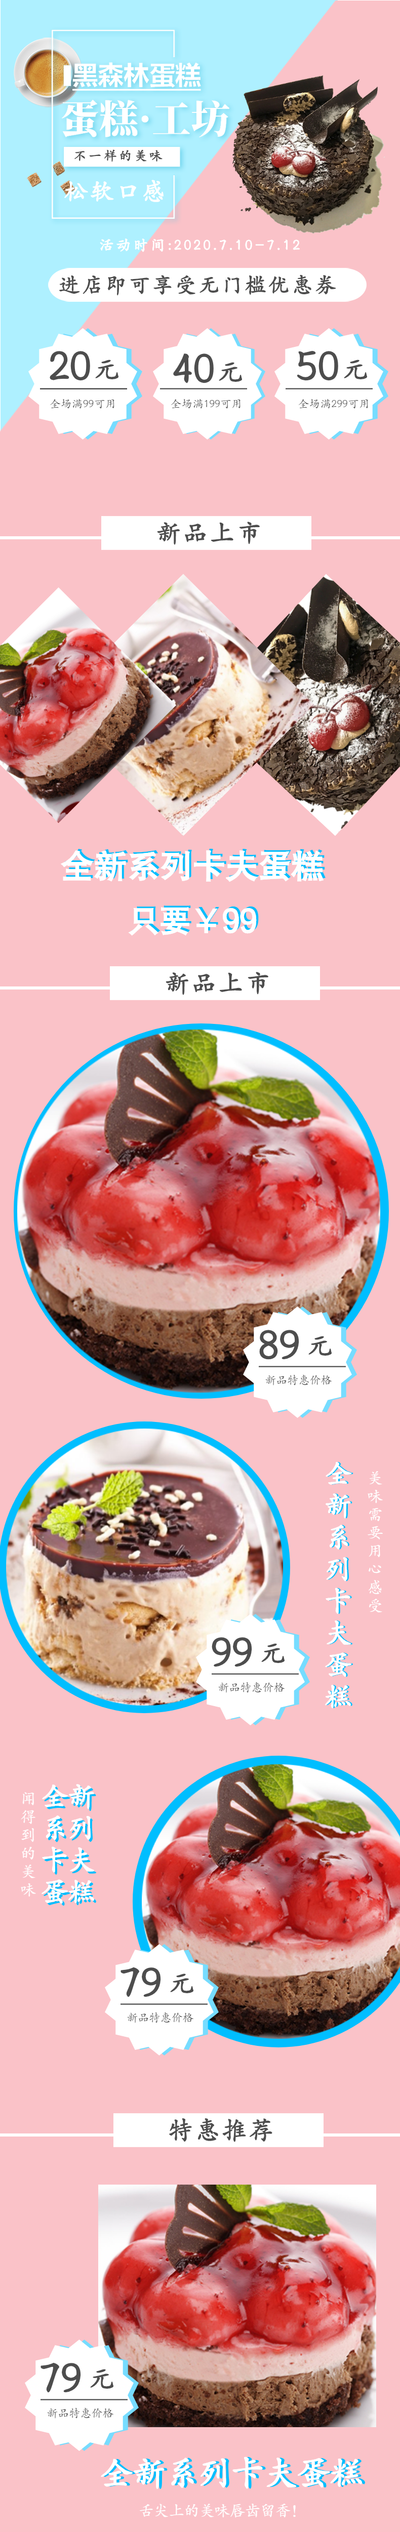 蛋糕甜品新店促销商品详情页